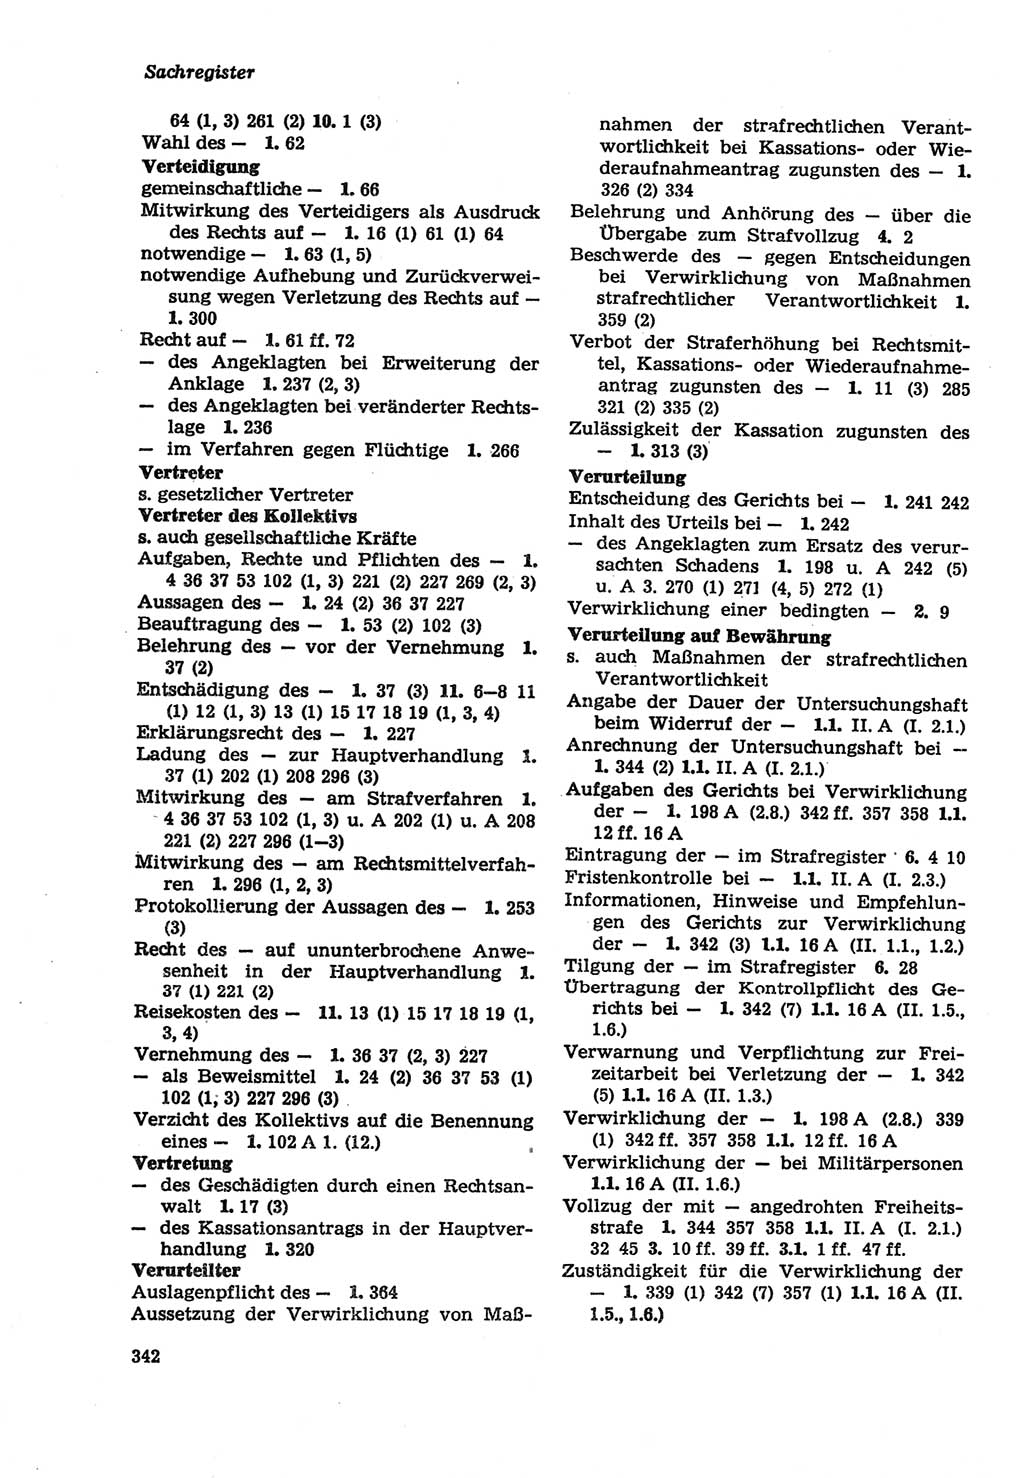 Strafprozeßordnung (StPO) der Deutschen Demokratischen Republik (DDR) sowie angrenzende Gesetze und Bestimmungen 1979, Seite 342 (StPO DDR Ges. Best. 1979, S. 342)